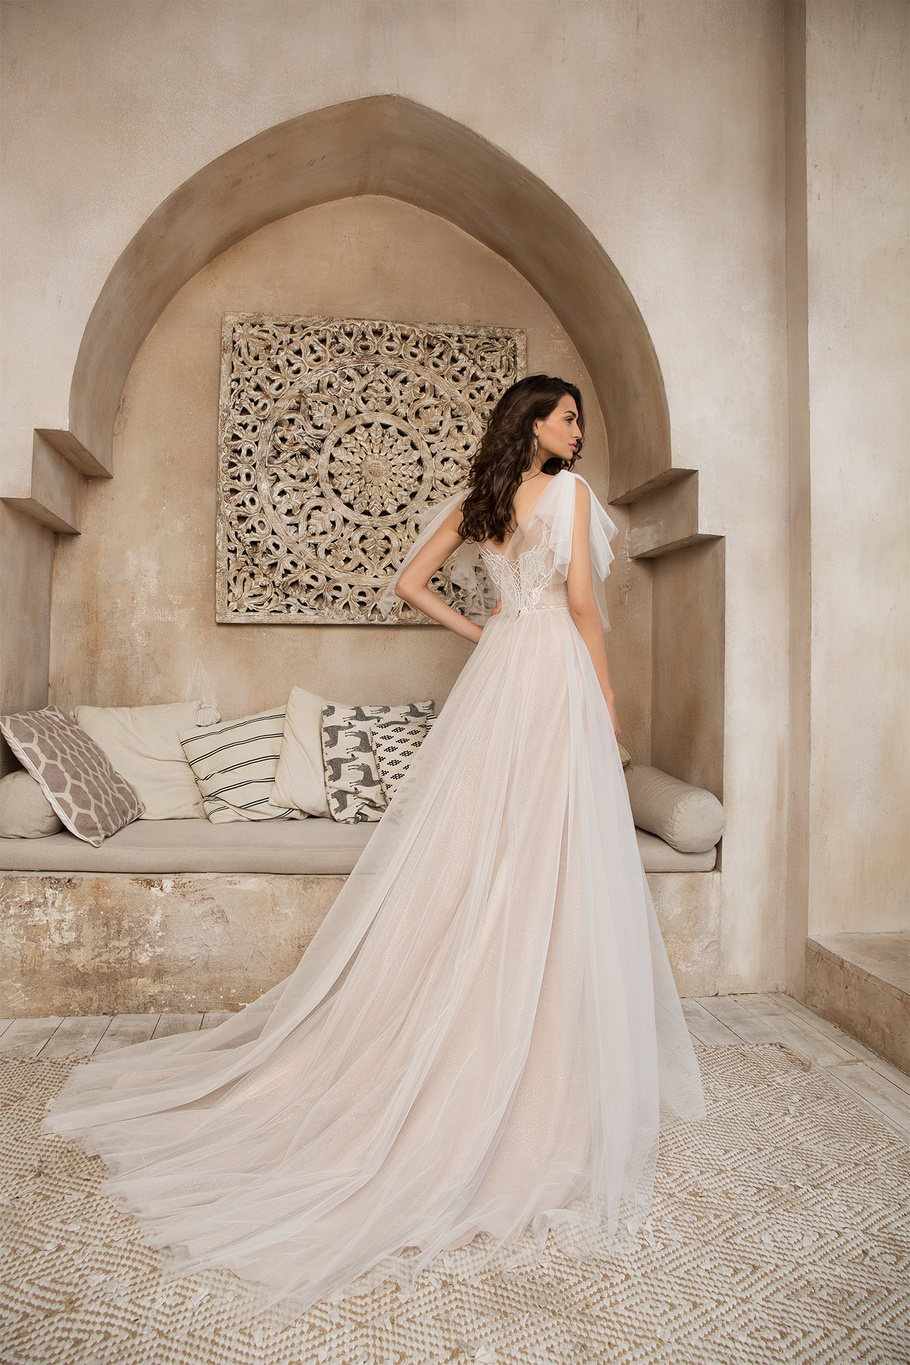 Купить свадебное платье «Федерина» Татьяны Каплун из коллекции «Даймонд Скай» 2020 в салоне